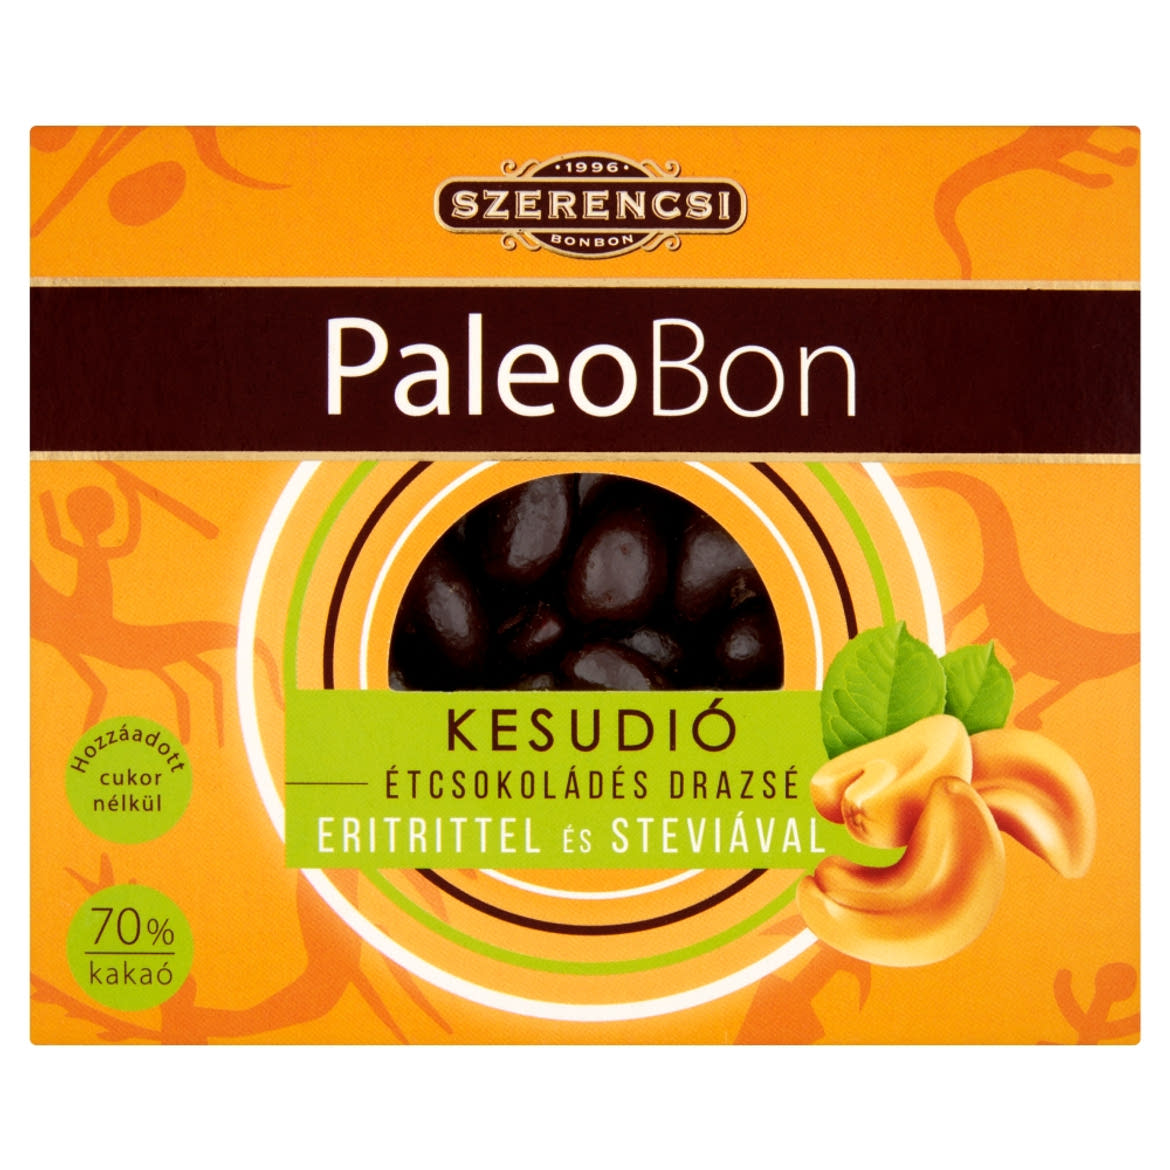 Szerencsi PaleoBon étcsokoládés kesudió drazsé eritrittel és steviával 100 g